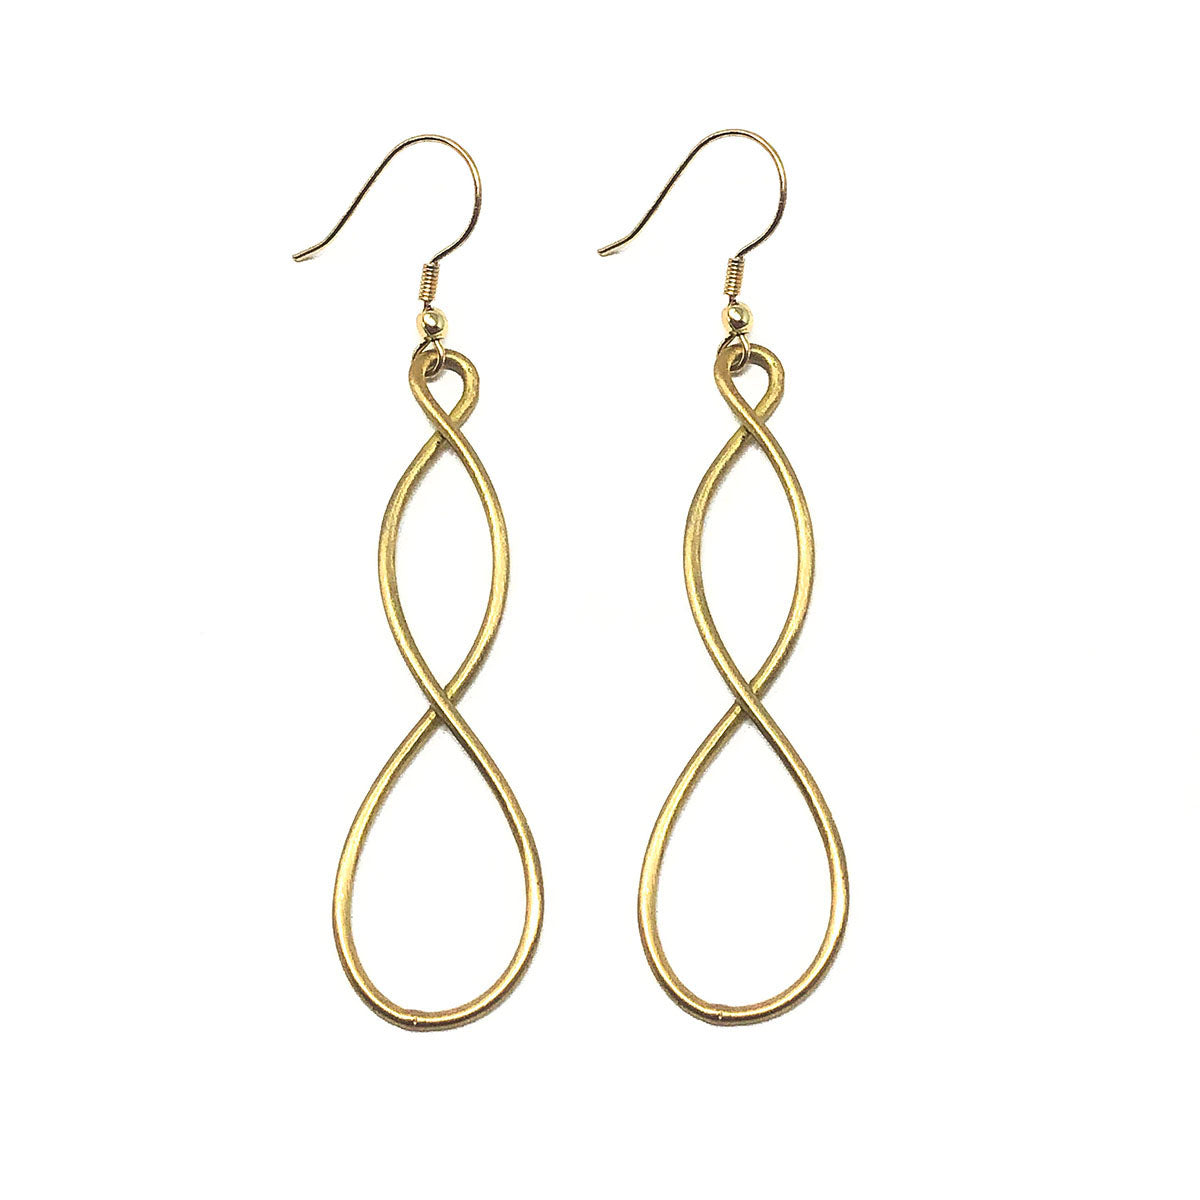 Metallic twist earrings - gold